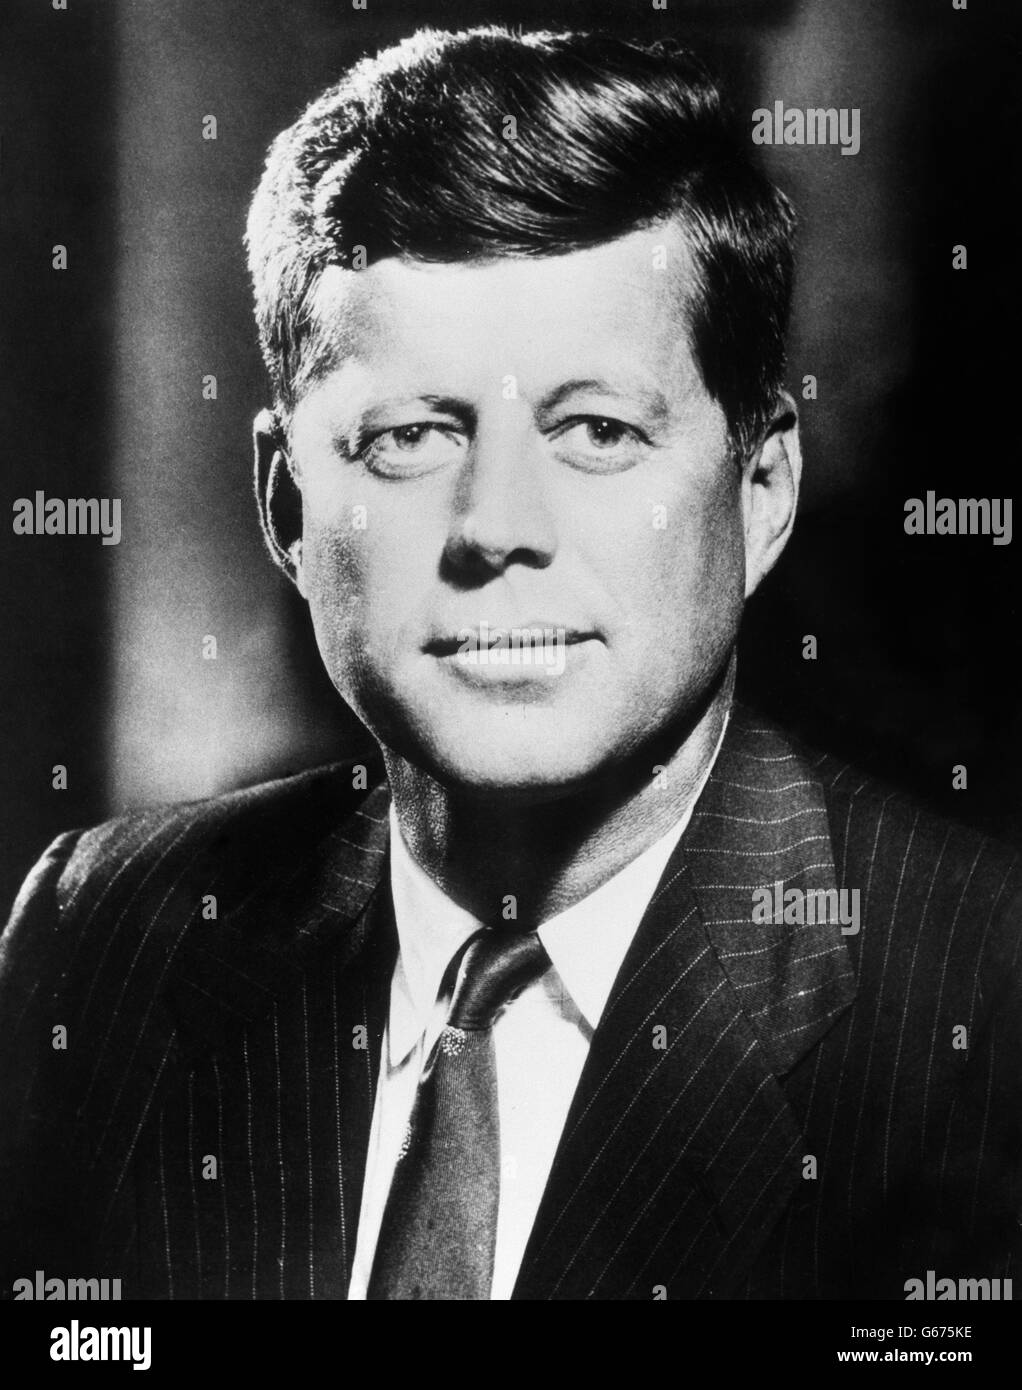 Politique AMÉRICAINE - John F Kennedy. Photo du président américain John F Kennedy. Banque D'Images